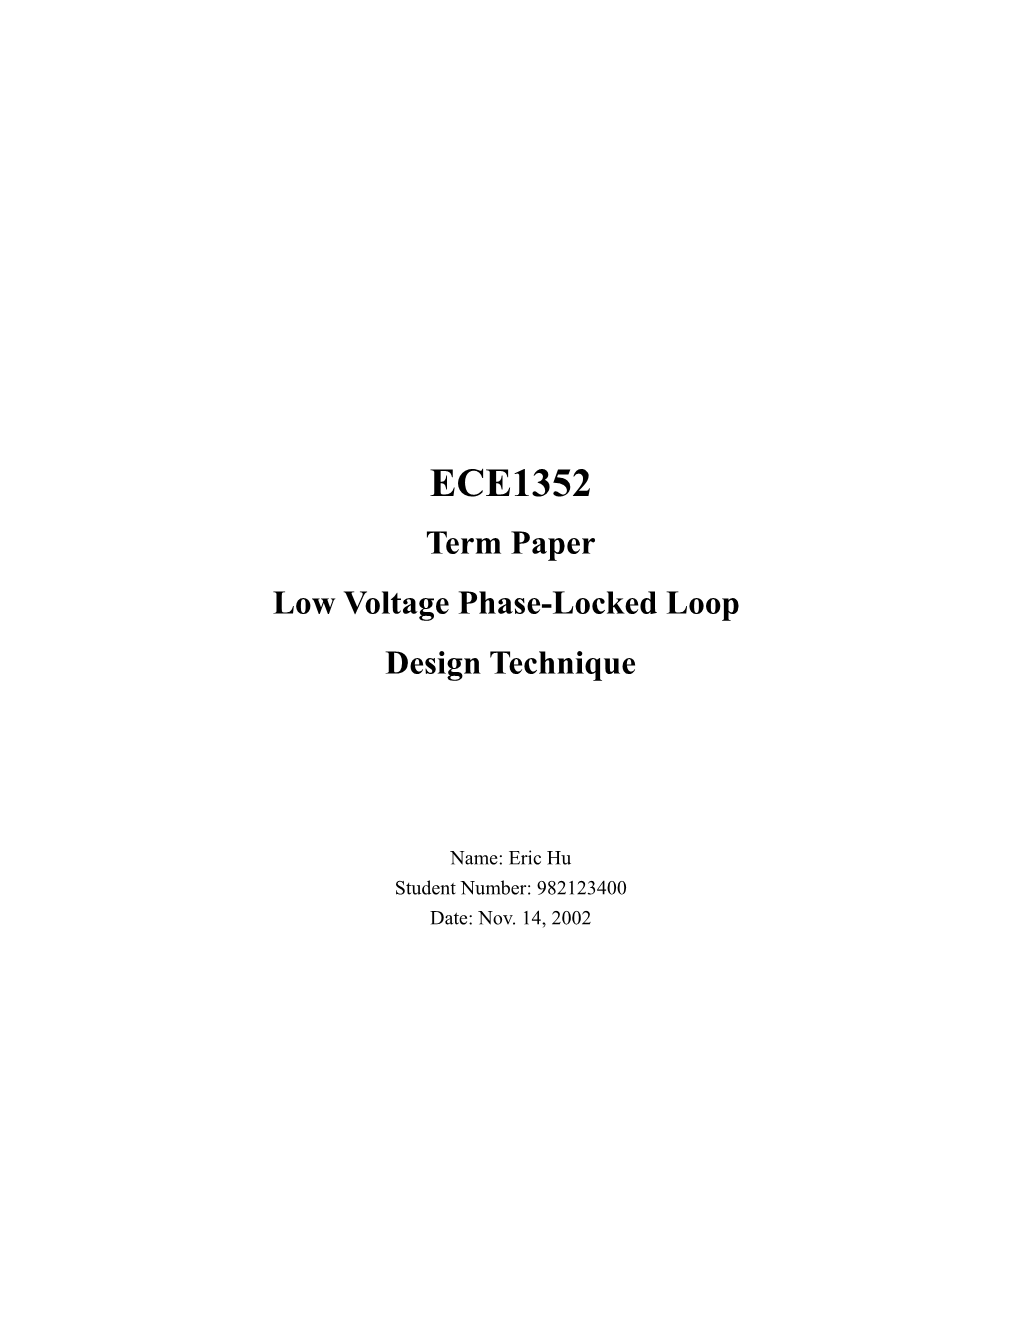 Low Voltage Phase-Locked Loop